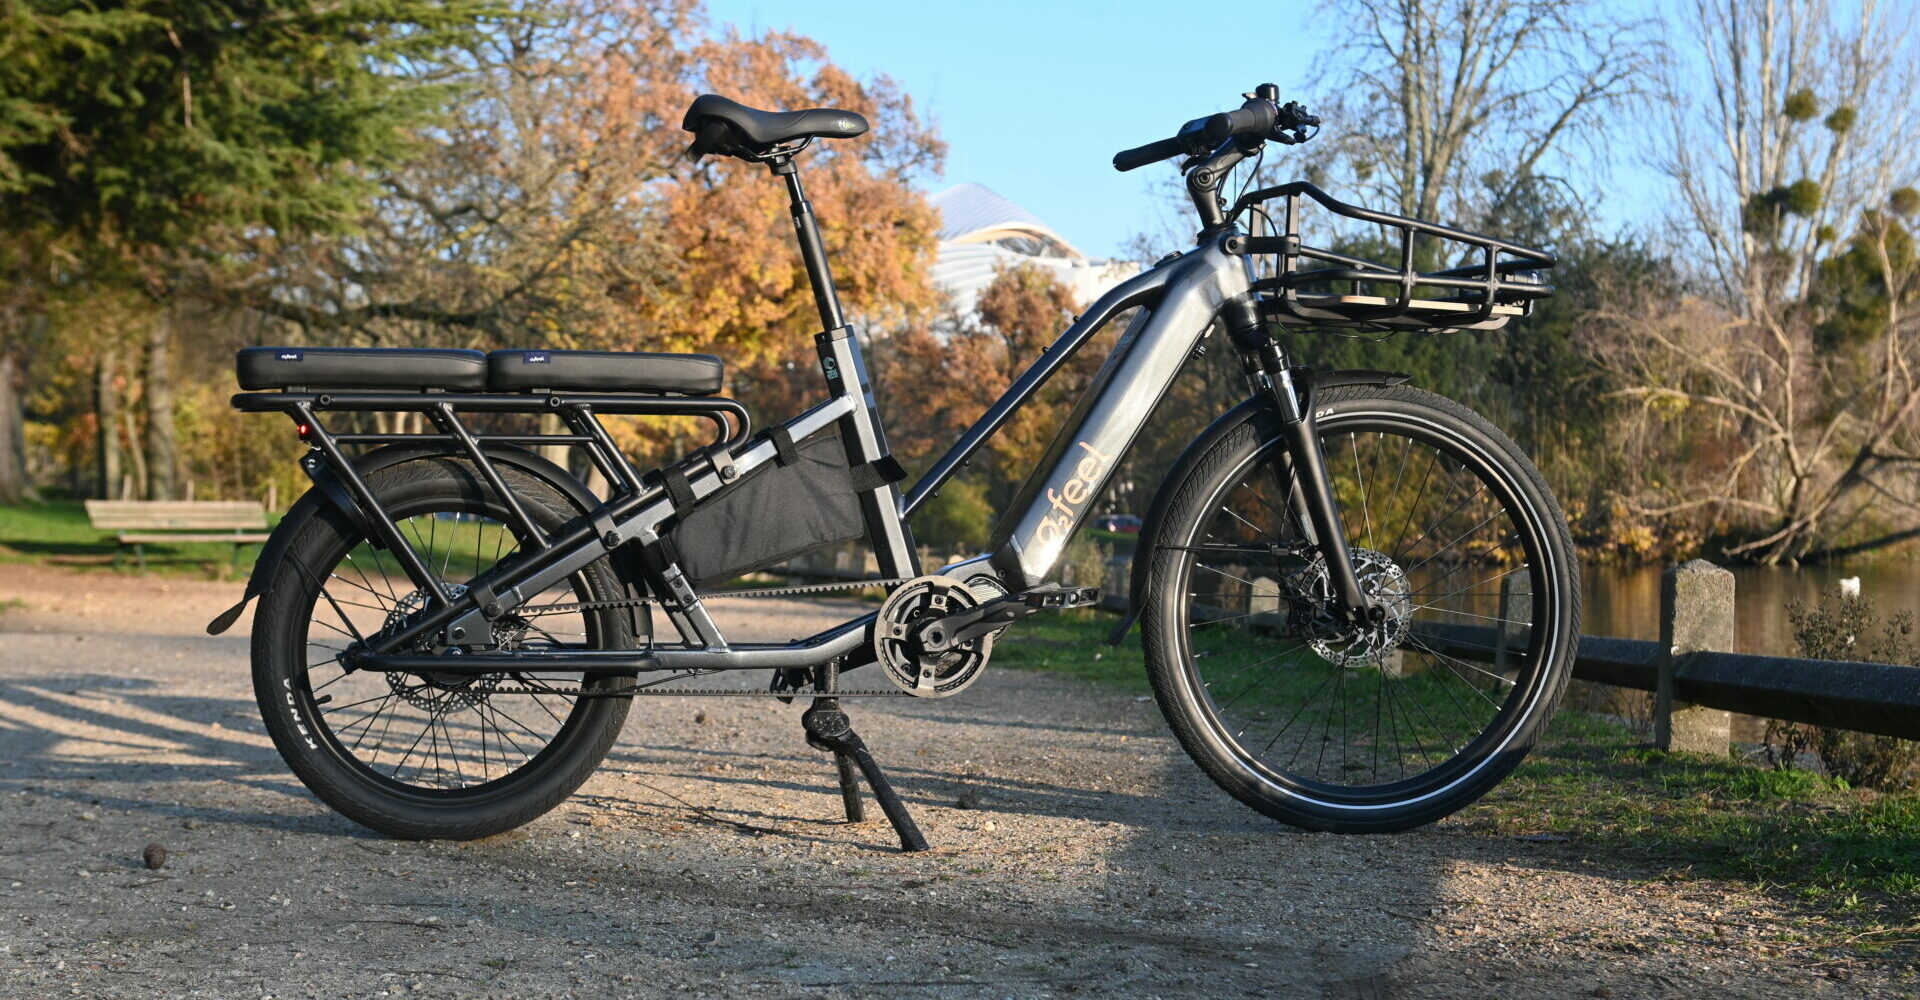 [Test] O2feel Equo, un vélo longtail avec de l'allant et de la bonne volonté